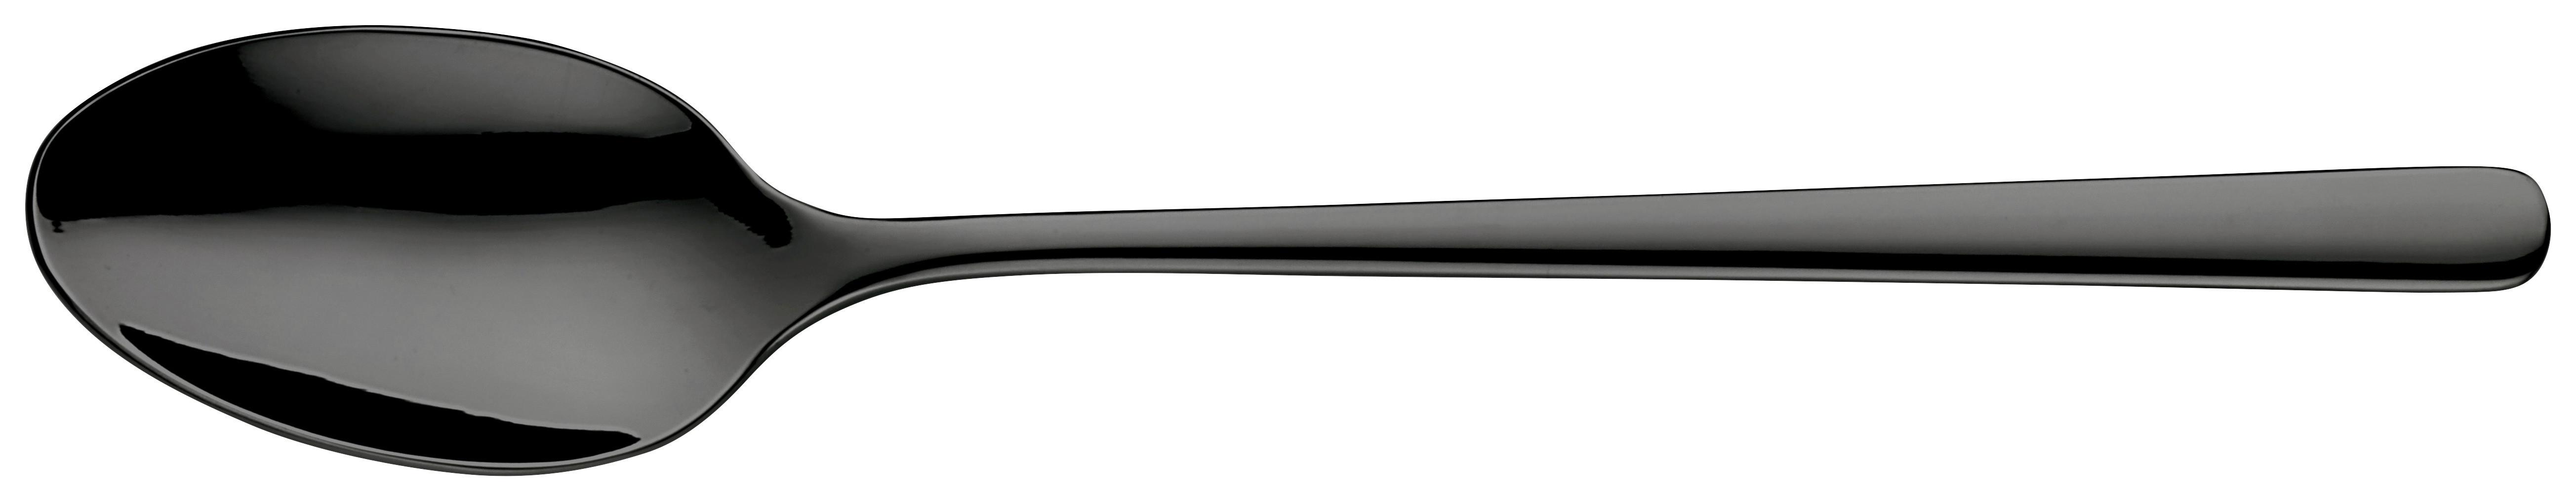 Löffel Black aus Edelstahl - Schwarz, MODERN, Metall (20,3cm) - Premium Living